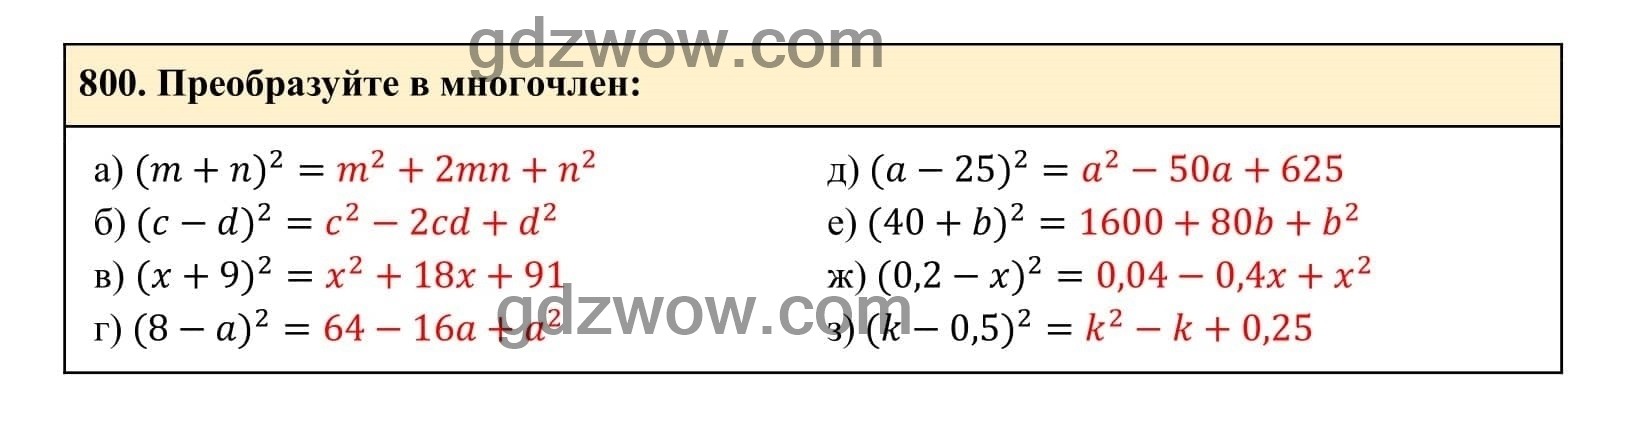 Упражнение 800 - ГДЗ по Алгебре 7 класс Учебник Макарычев (решебник) - GDZwow